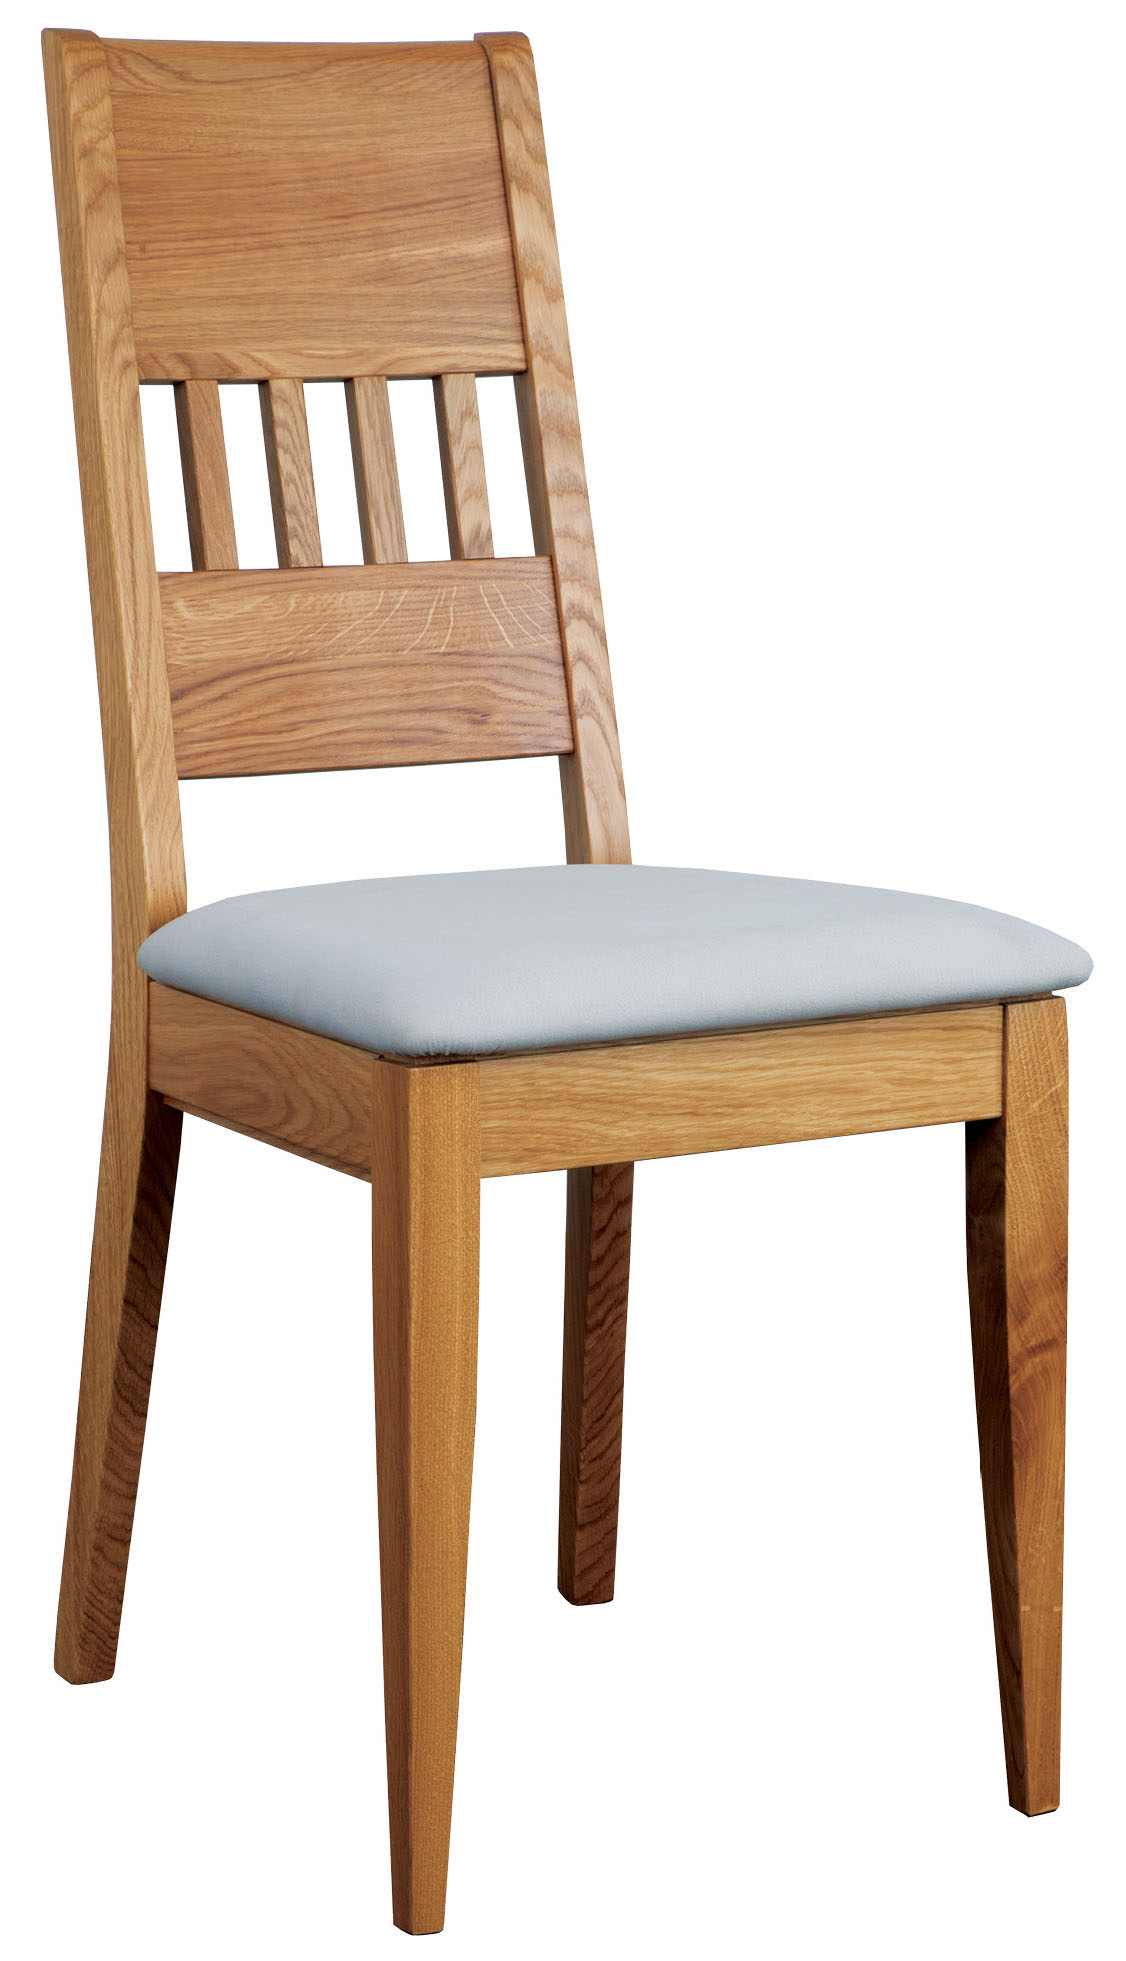 Dubová židle s polstrovaným sedákem KT375